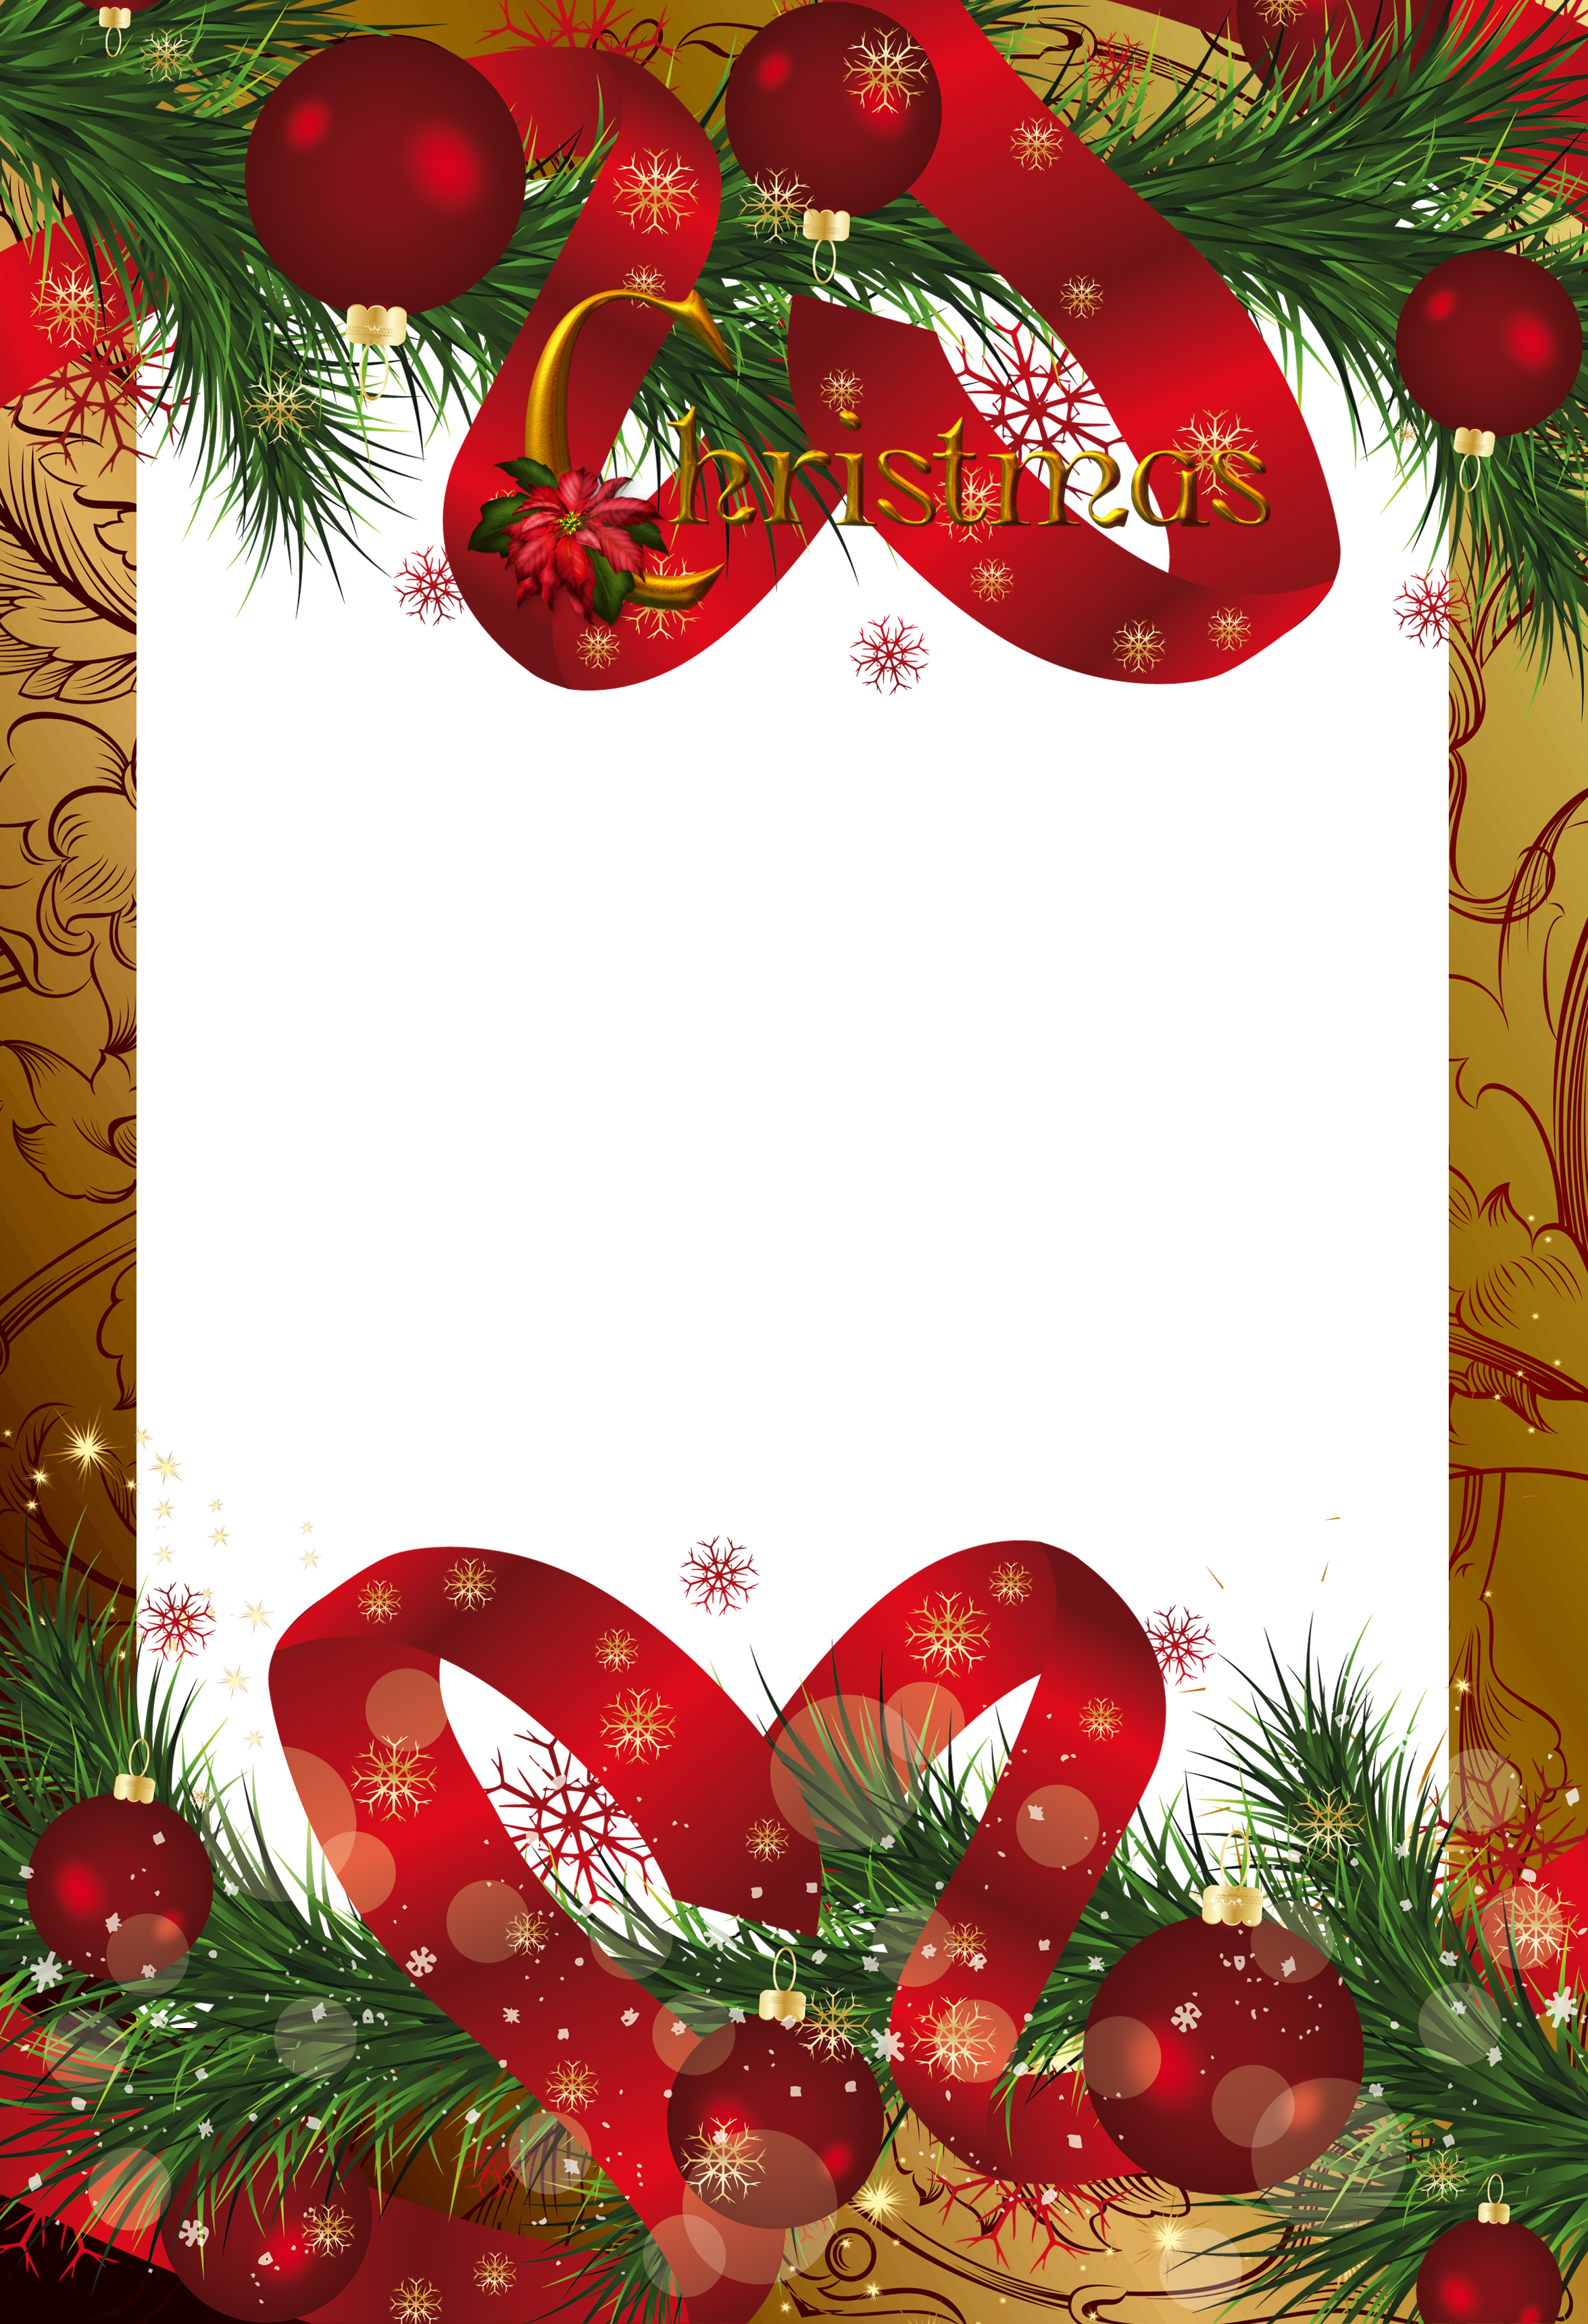 Download Free Christmas Png Frame Download Free Clip Art Free Clip Art On Clipart Library Yellowimages Mockups